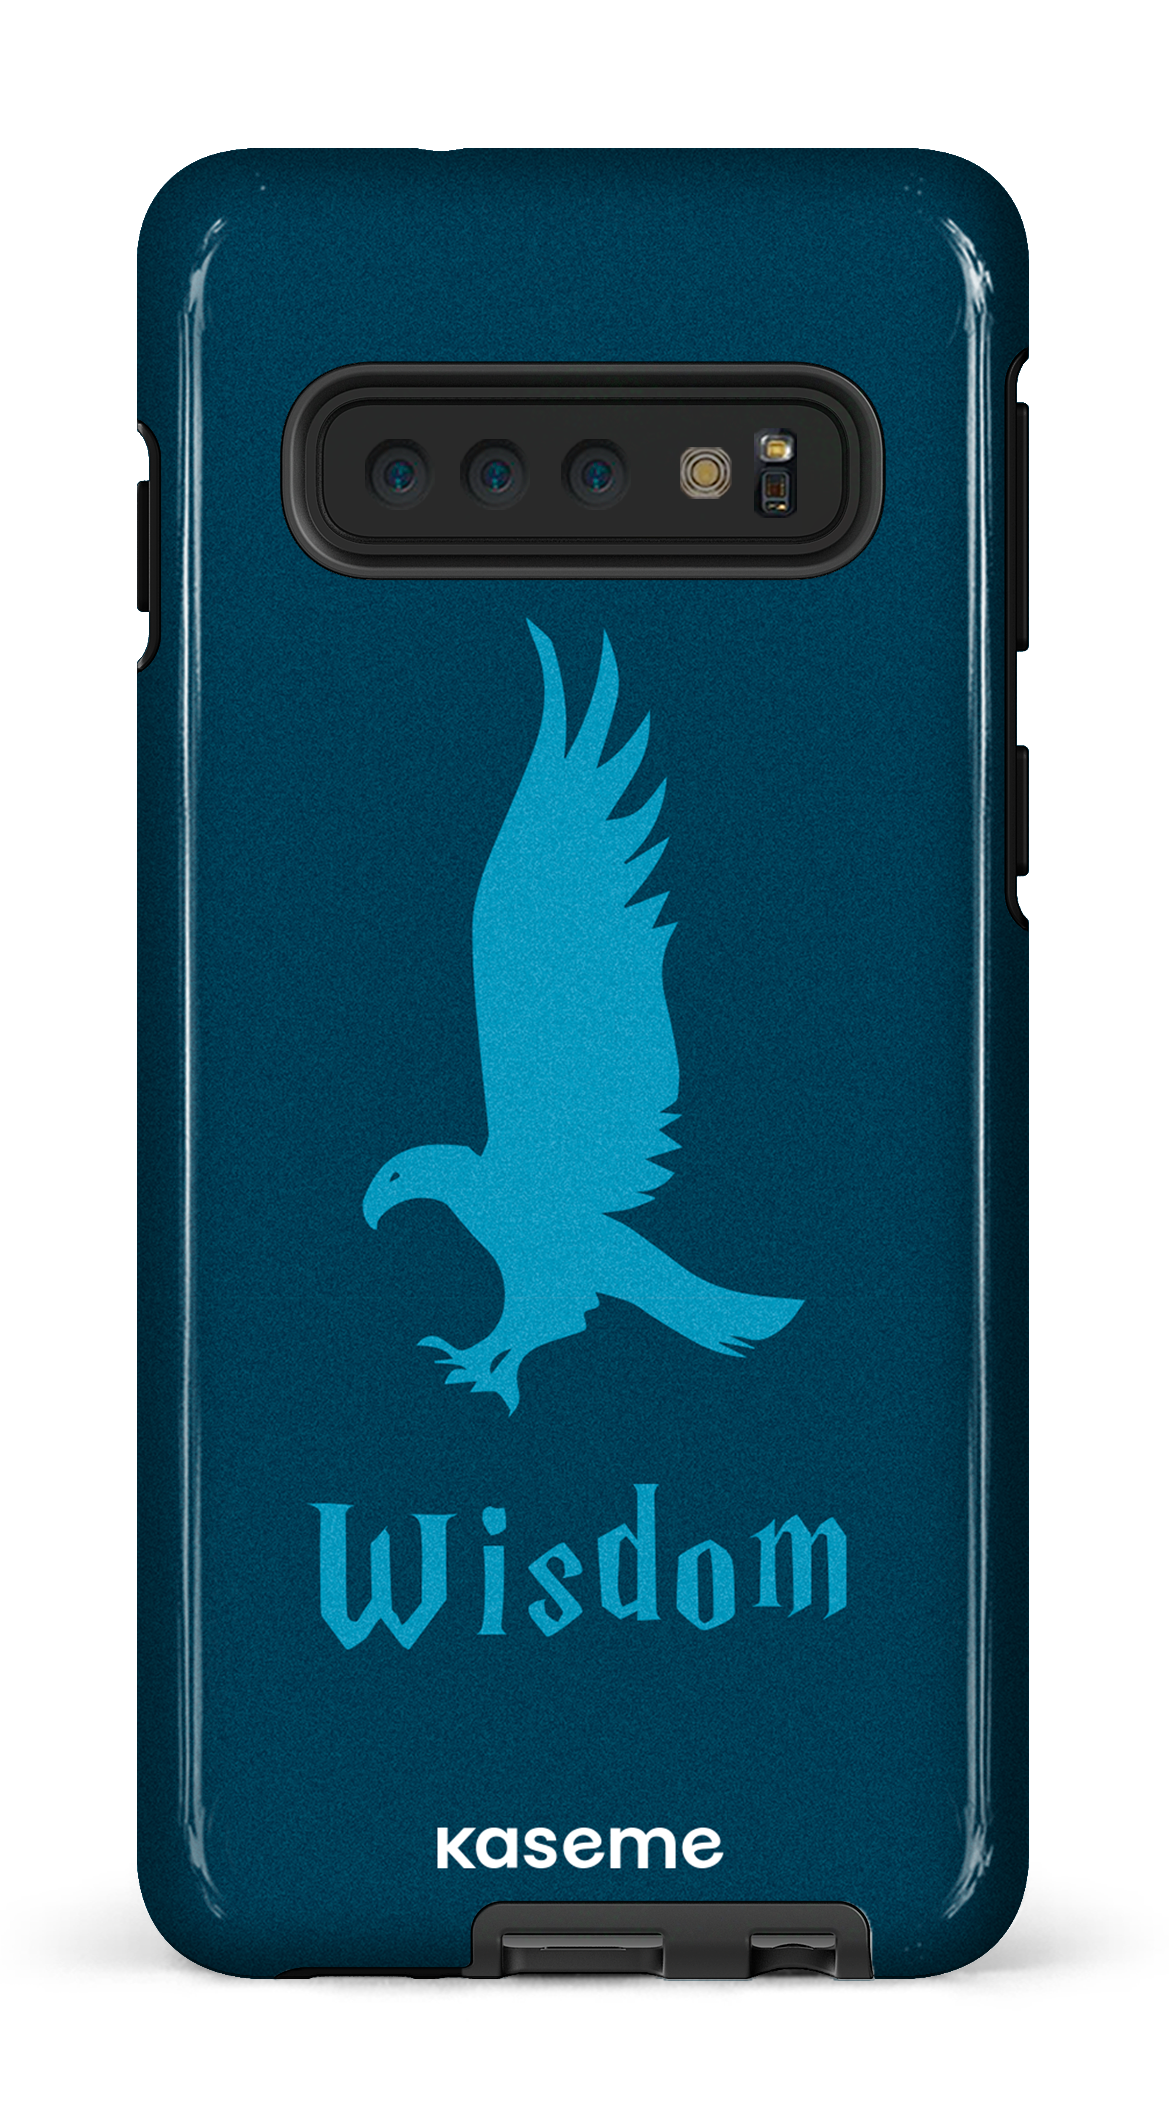 Wisdom - Galaxy S10